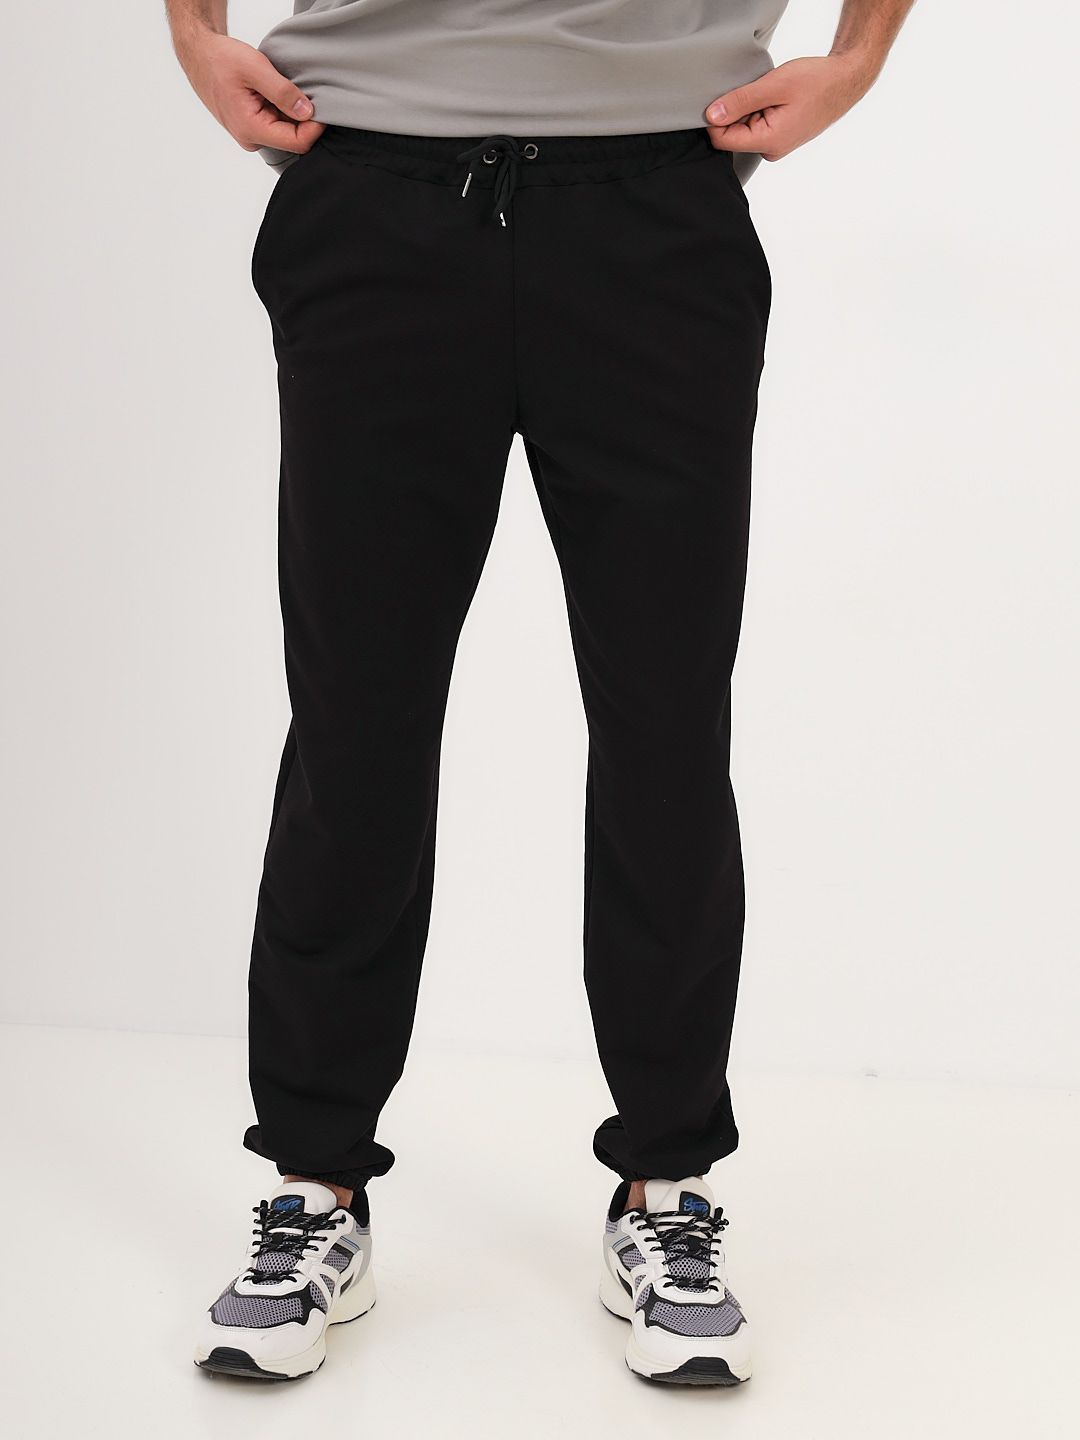 Спортивные брюки мужские MOM №1 MOM-88-3170 черные 46